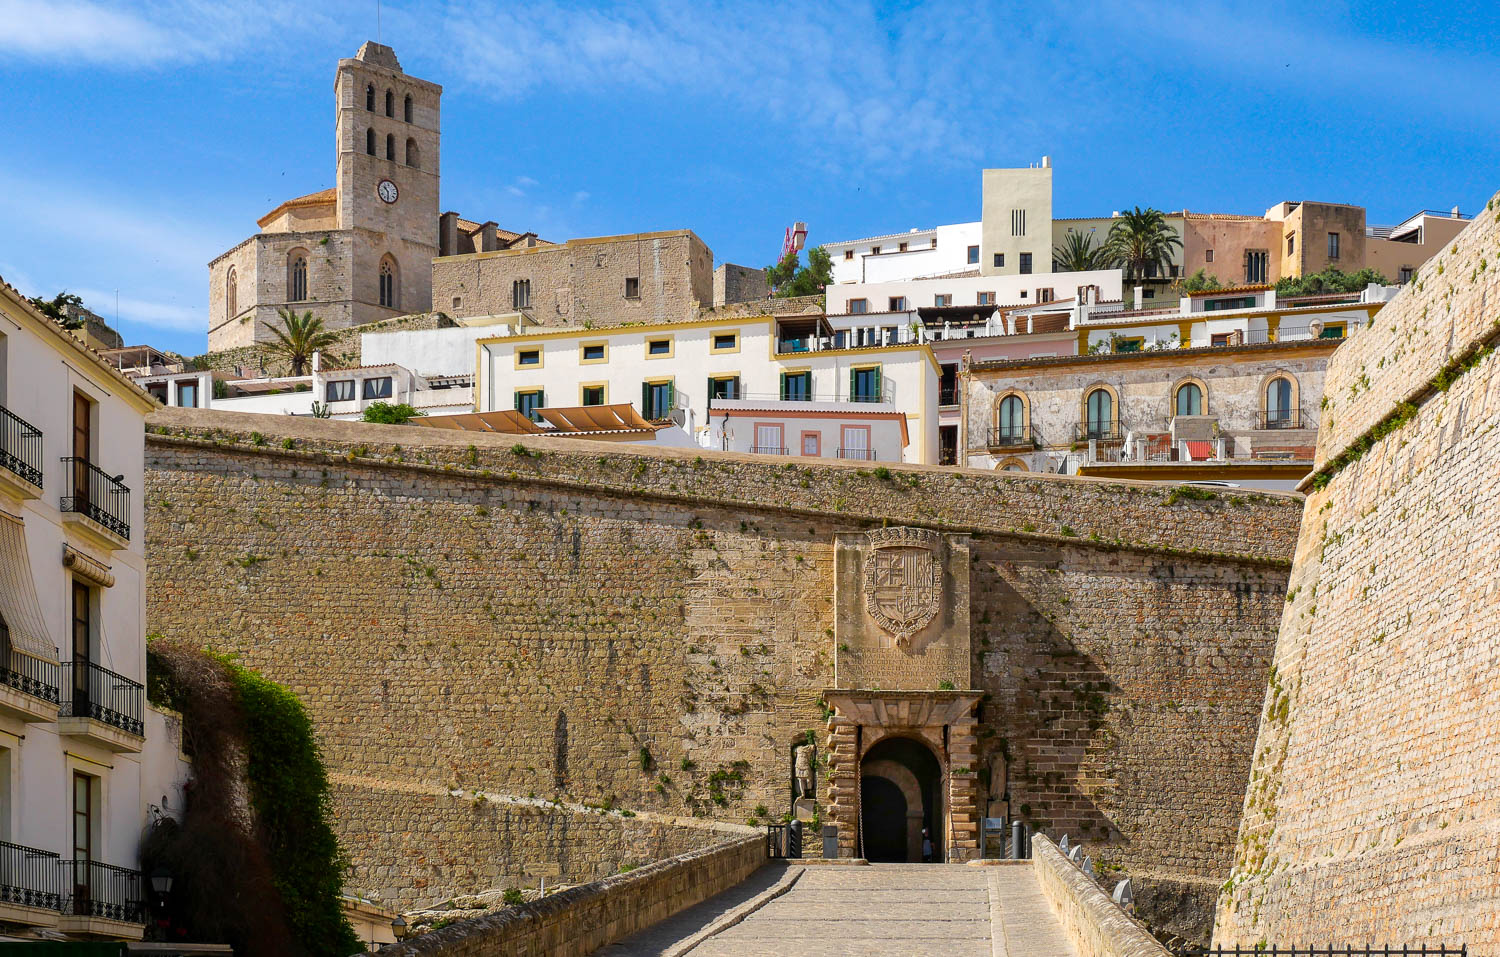 Portal de ses Taules forteresse vieille ville dalt vila eivissa ibiza espagne